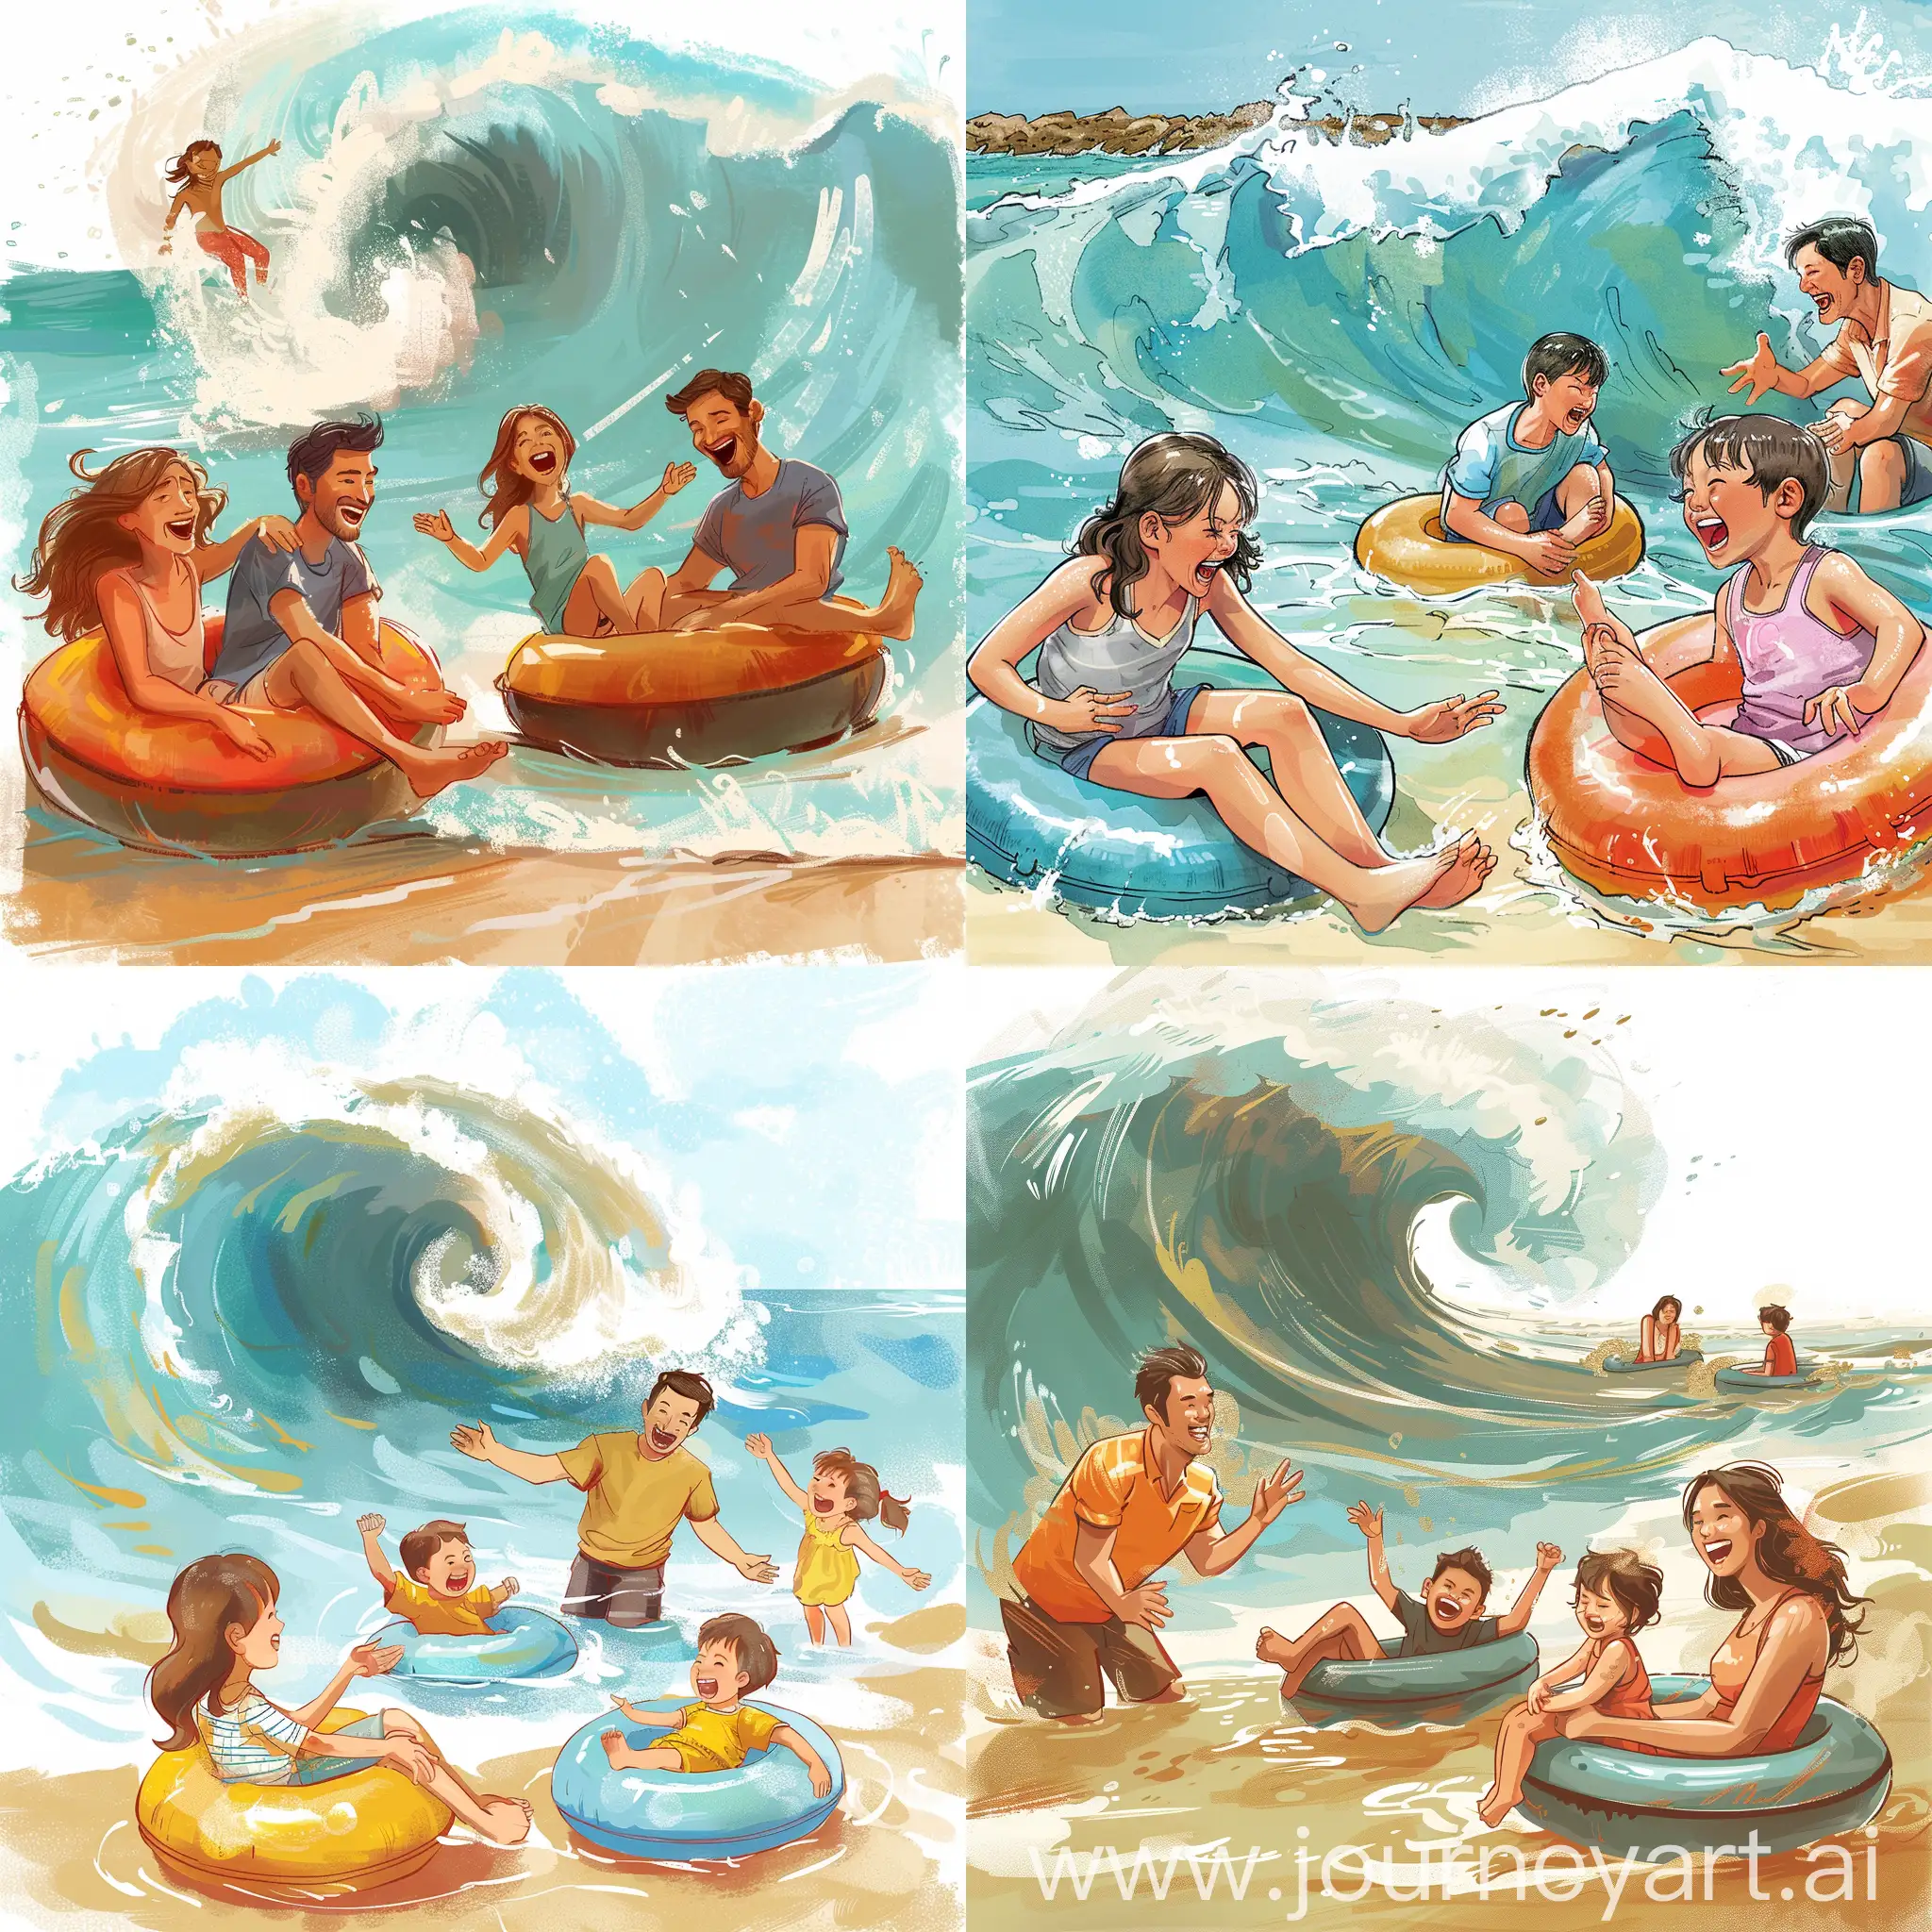 画一幅插画，海滩上有四个人，两个大人一男一女，和两个小孩。这一家人在玩水。小男孩和小女孩坐在气圈上，气圈浮在水面上，随着波浪飘动。两个大人护着两个小孩。有浪冲过来，一家人都开心的笑着。